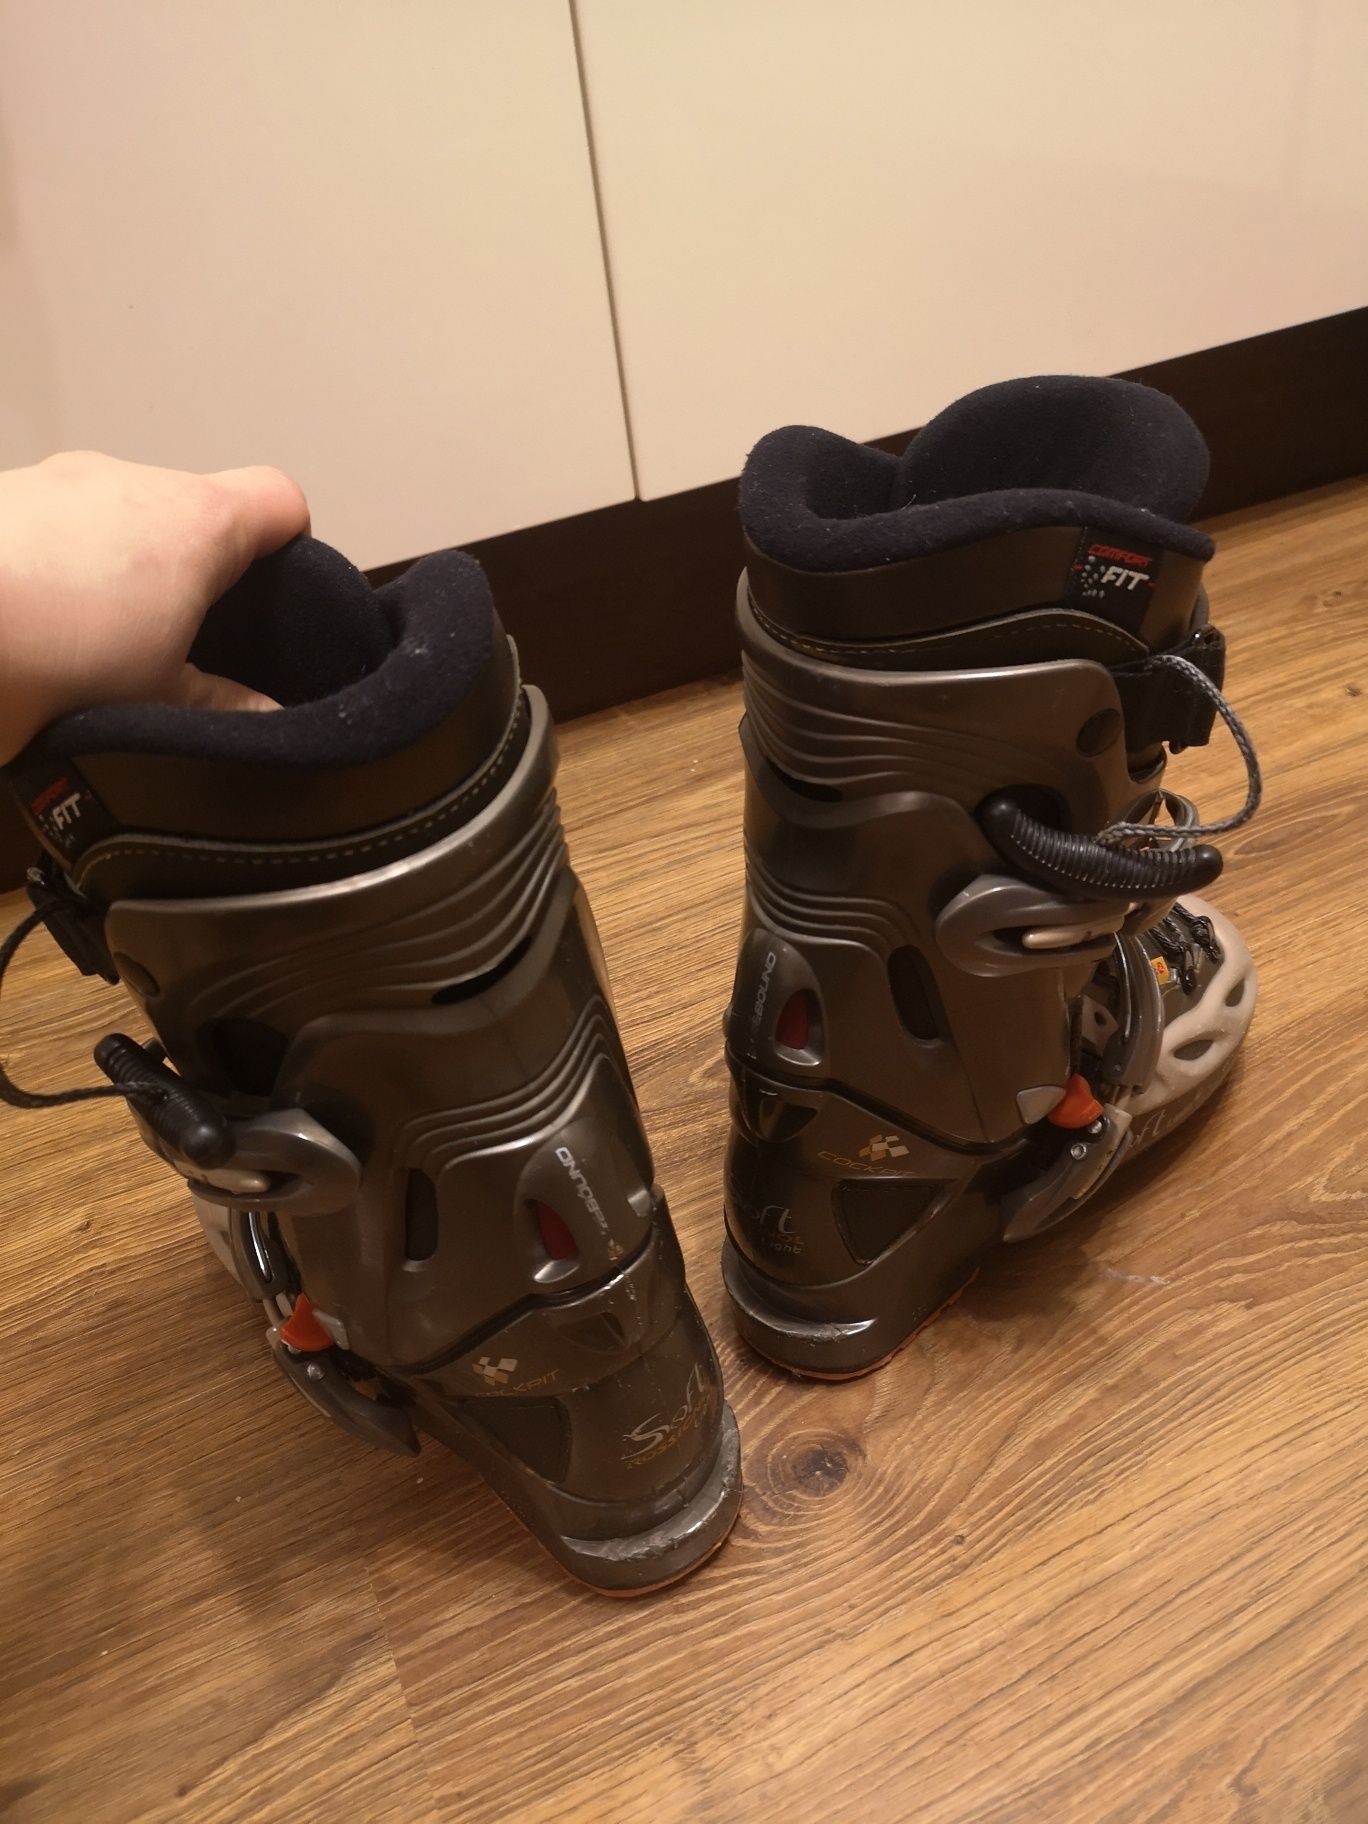 Rossignol buty narciarskie uniseks skorupa 285 mm 245 wewnątrz 36/37